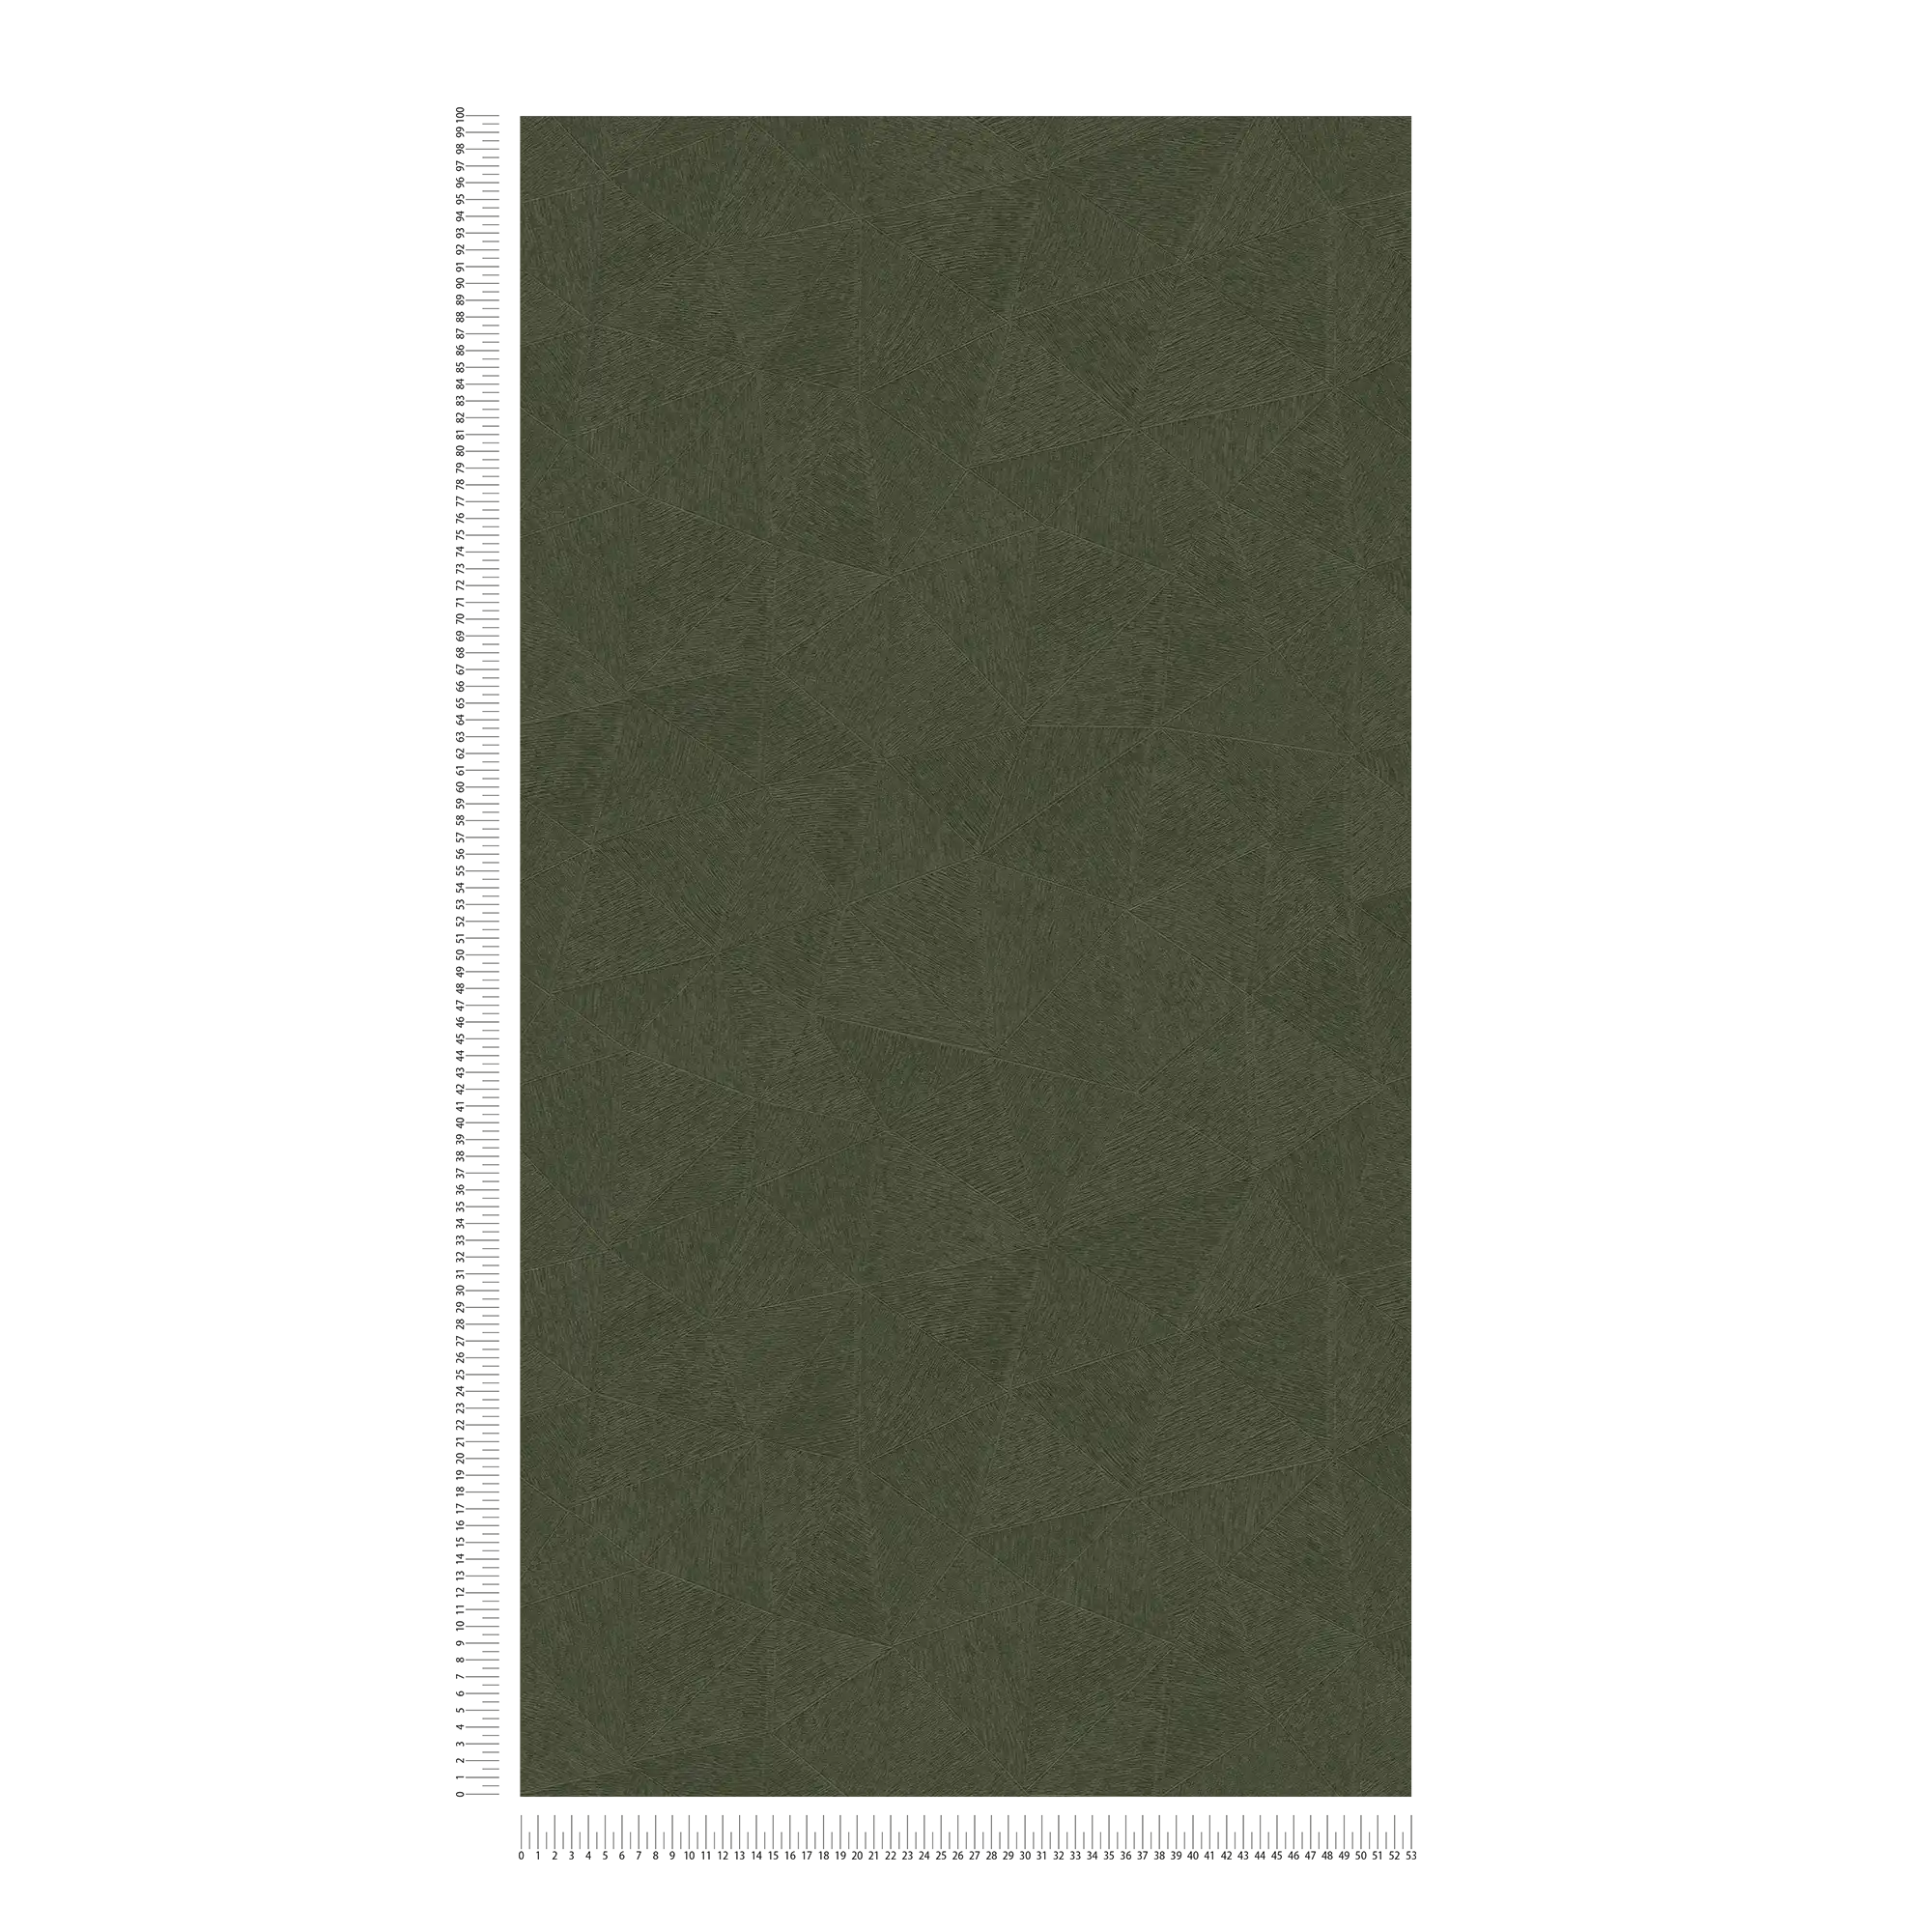             Carta da parati in tessuto non tessuto con sottile motivo grafico - verde
        